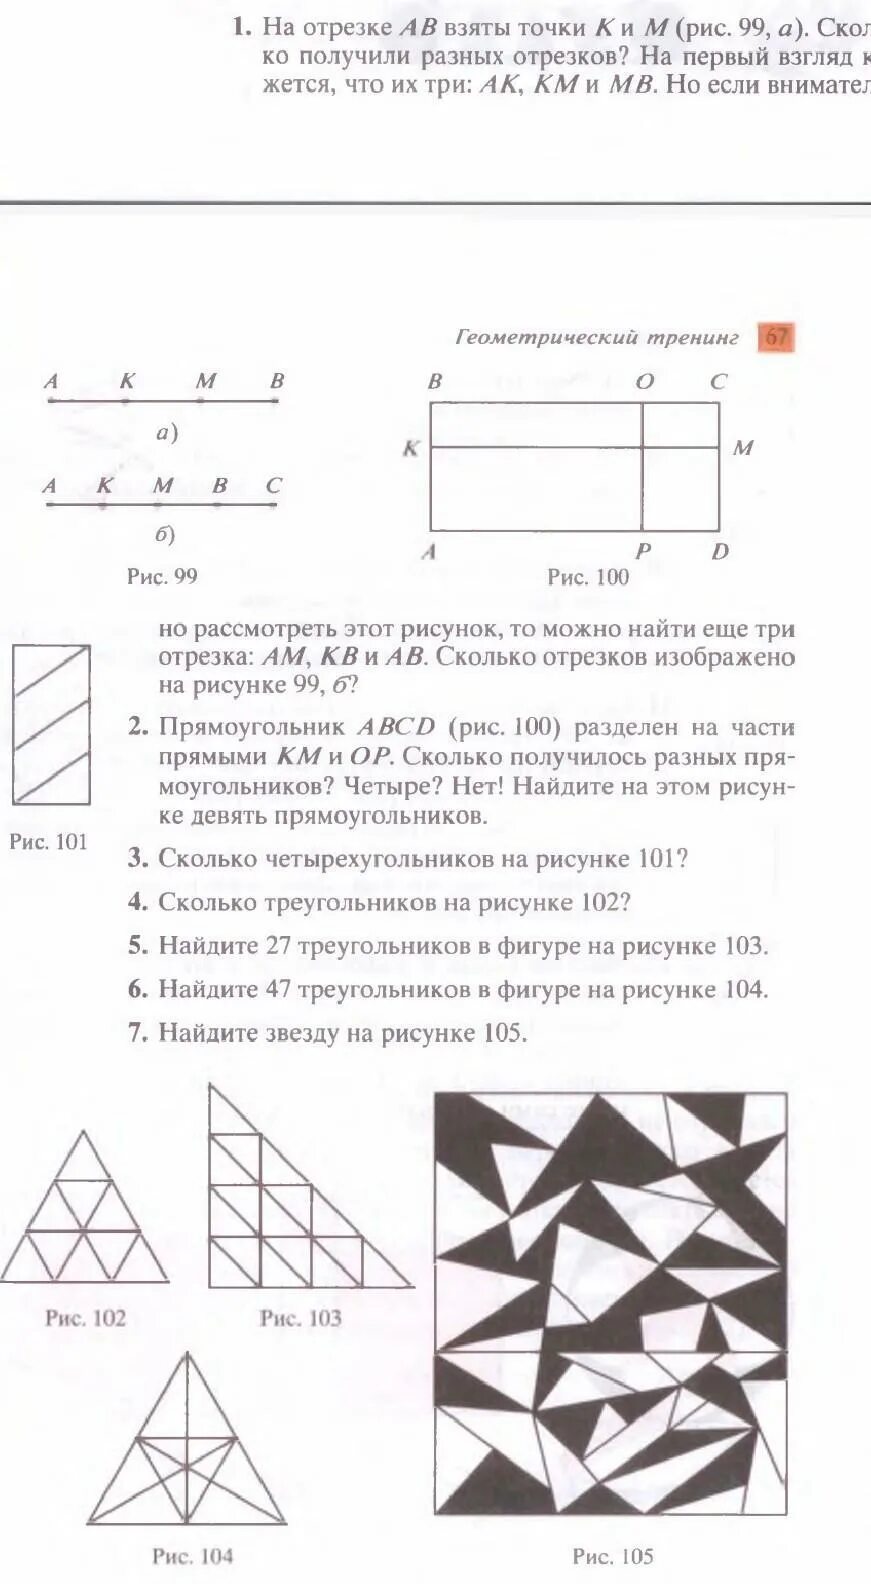 Геометрический тренинг. Учебник наглядная геометрия 5-6 класс Шарыгин. Учебник математика наглядная геометрия 5-6 класс Шарыгин Ерганжиева. Ерганжиева наглядная геометрия 5-6 класс.